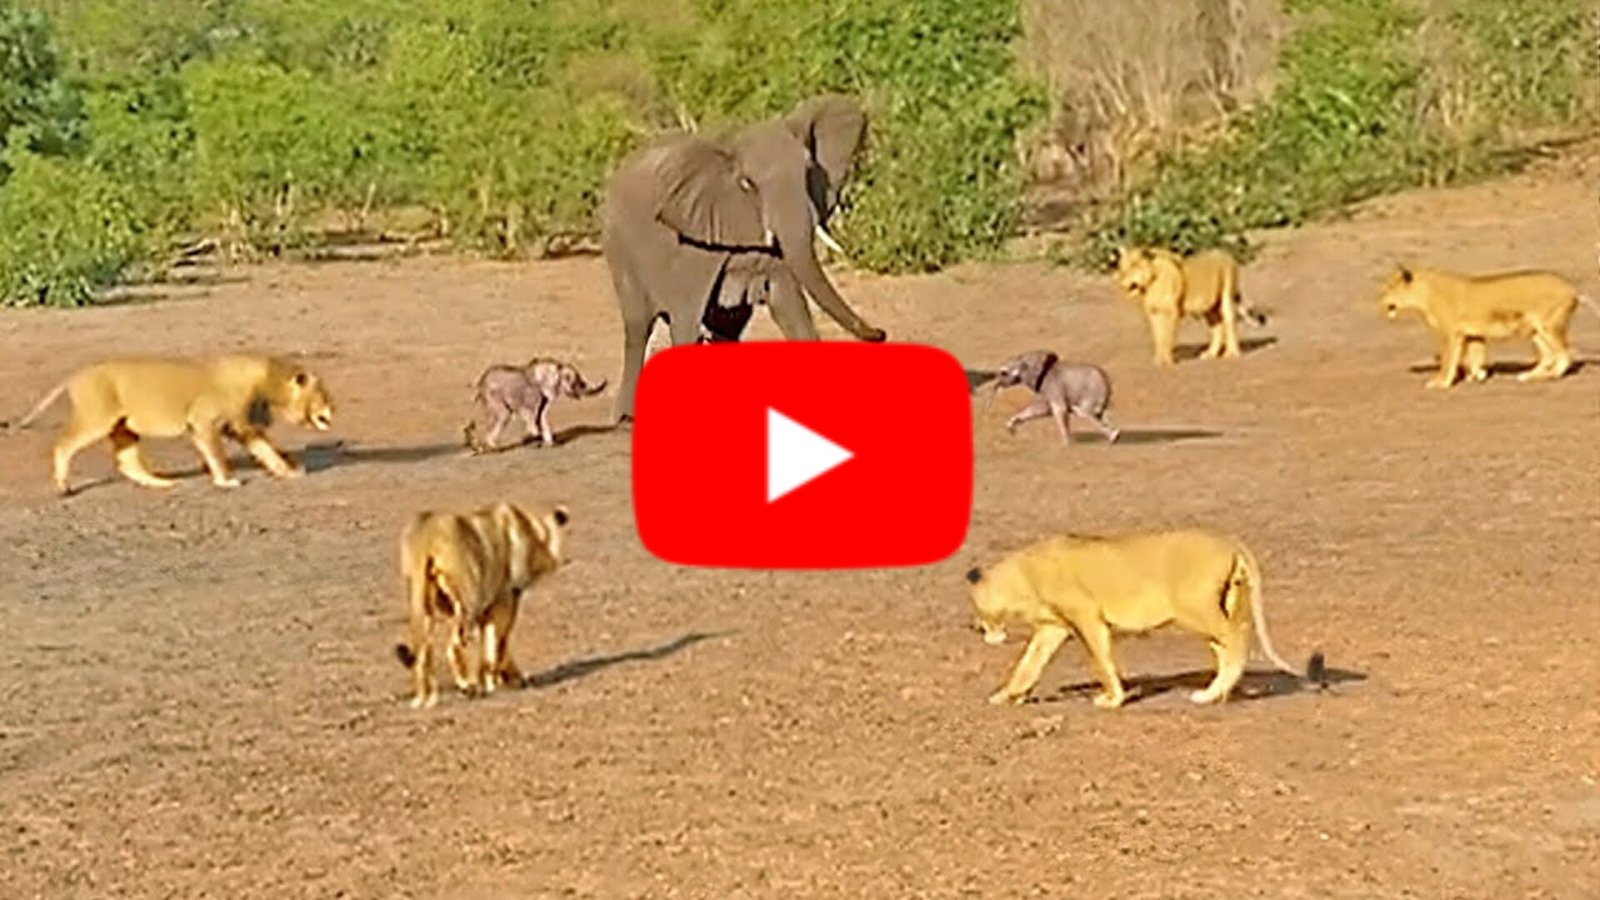 Sher aur Hathi Ka Video - अकेले हाथी पर टूट पड़ा शेरो का झुंड, लेकिन अंजाम पड़ गया उल्टा, देखे Video....